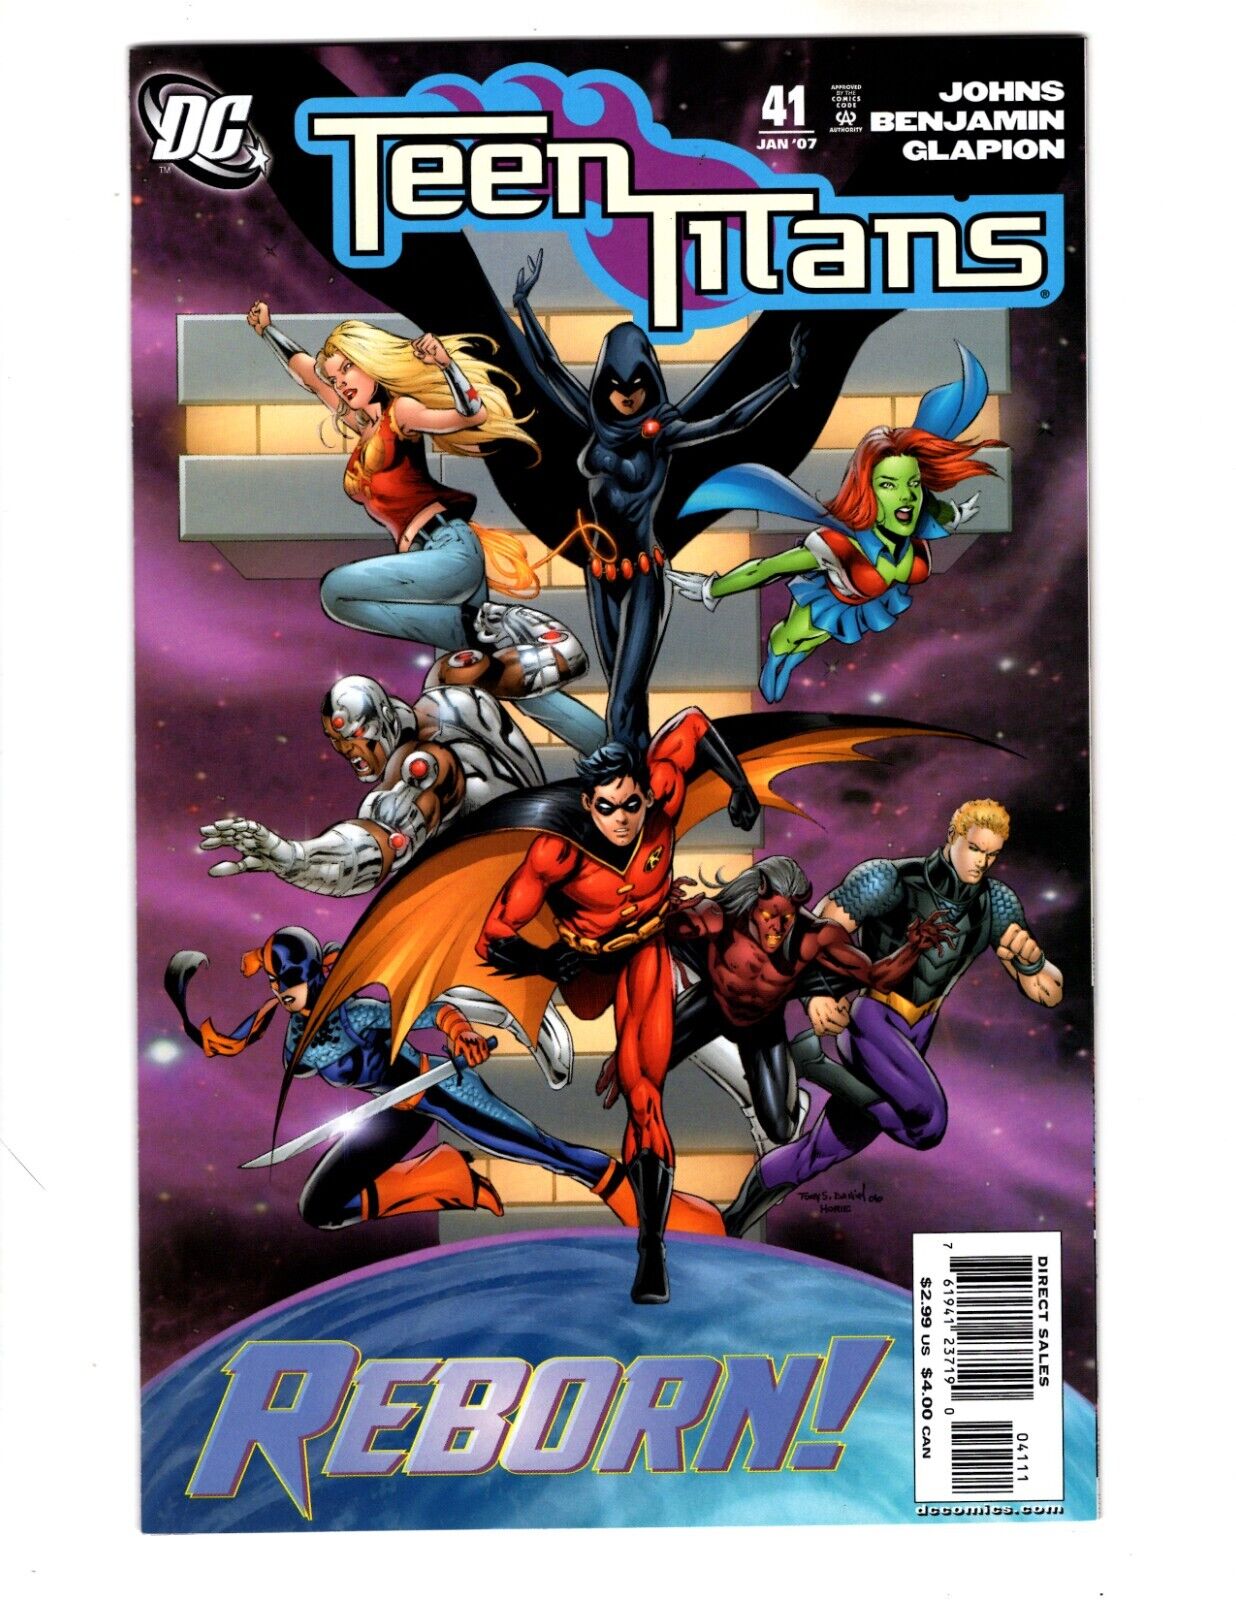 TEEN TITANS #41 (VF) [2007 DC COMICS]